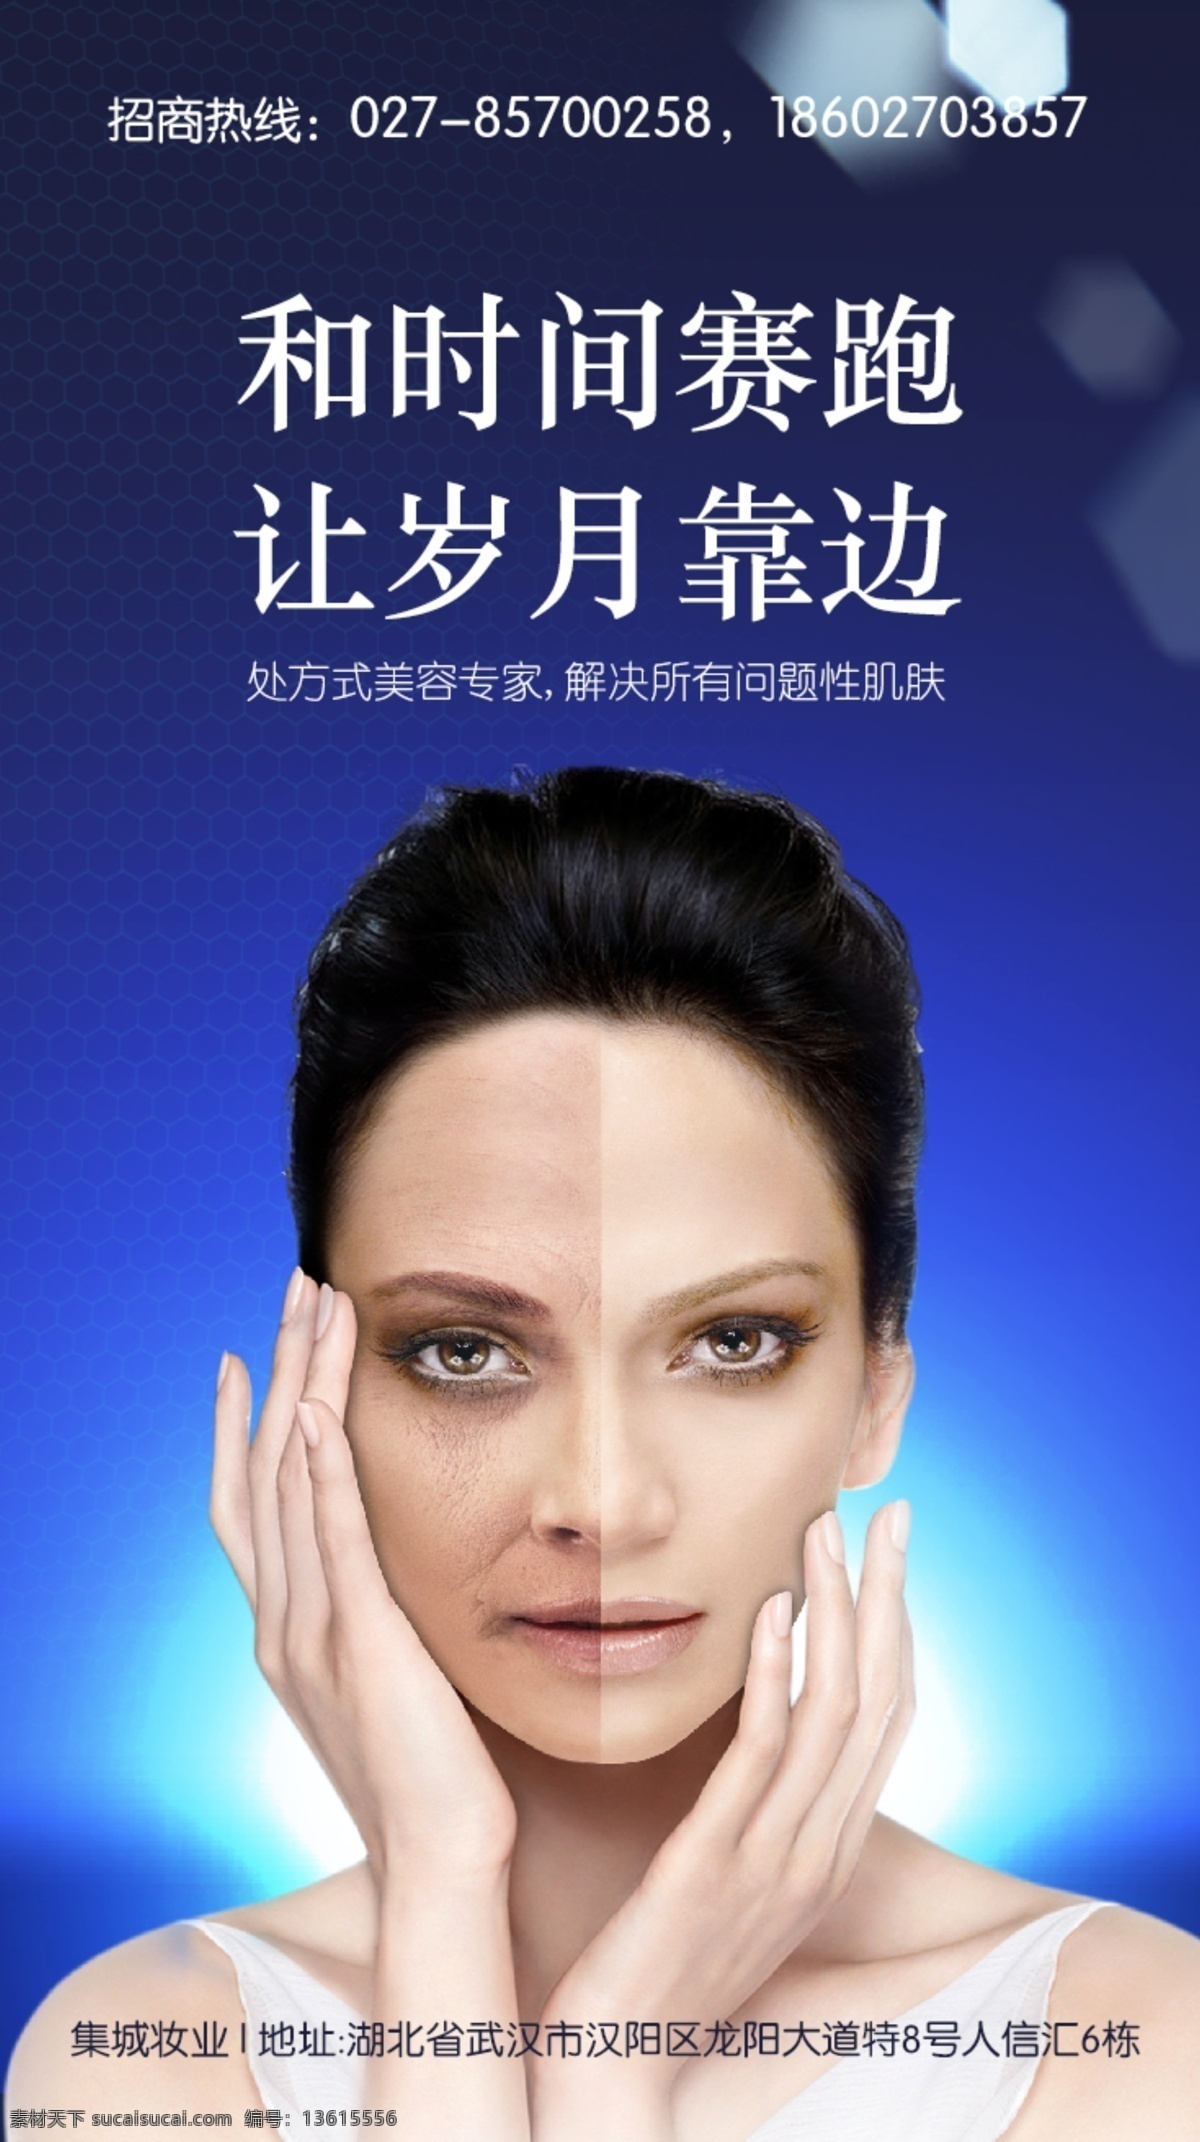 美容面膜广告 美容 问题皮肤 蓝色 背景 光 分层